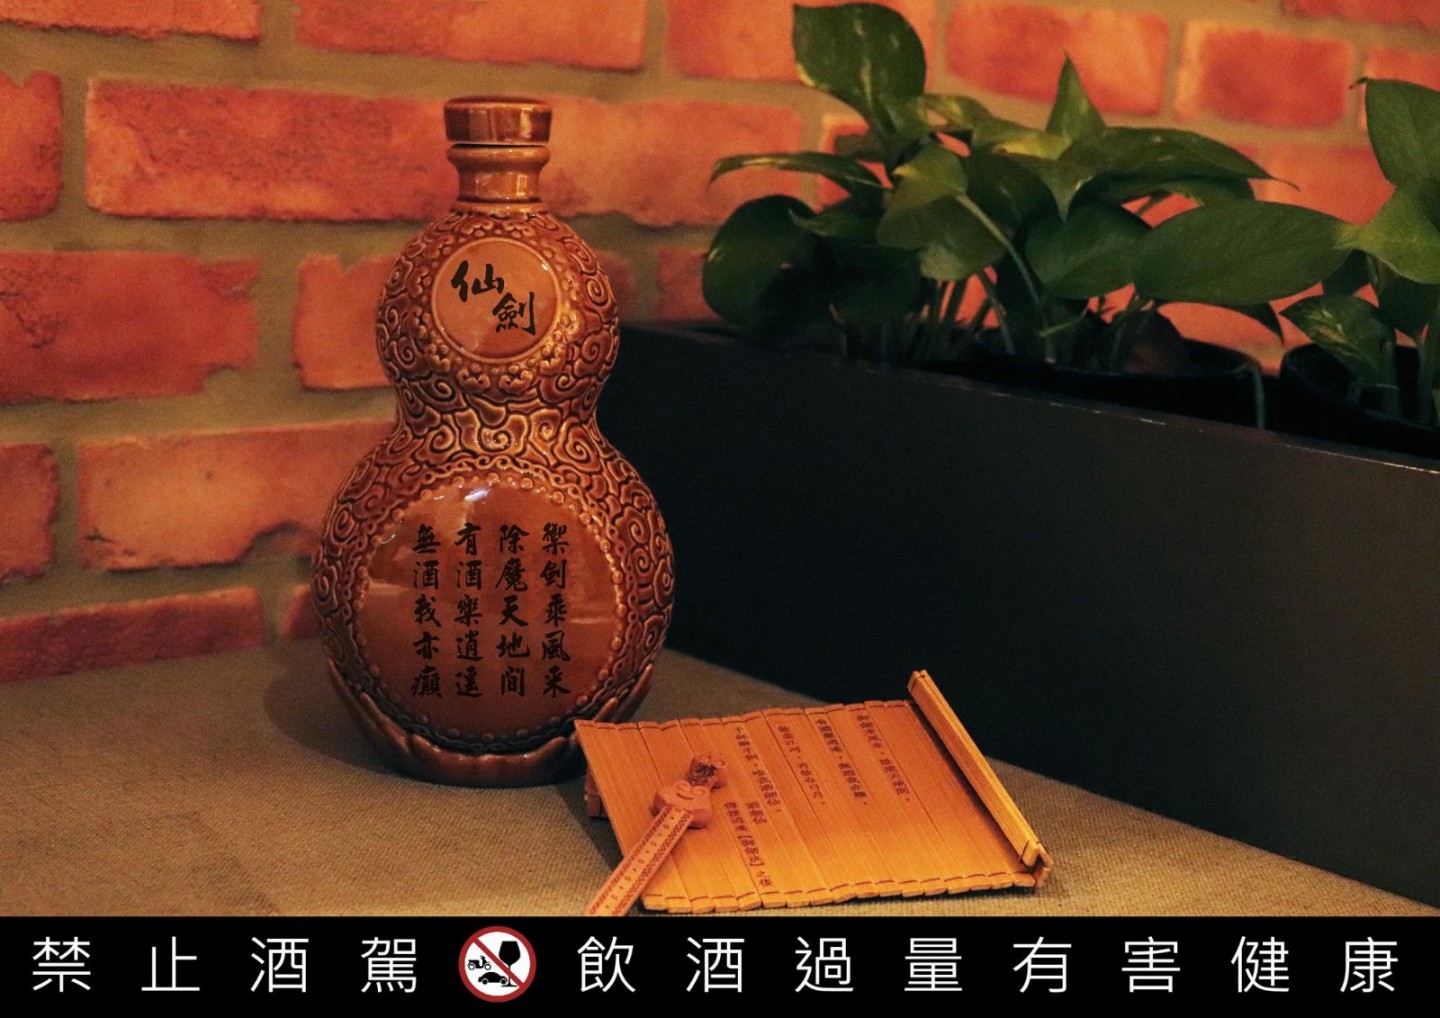 《仙剑奇侠传》推限量版"葫芦"造型纪念酒  8月31日开始预购-第2张